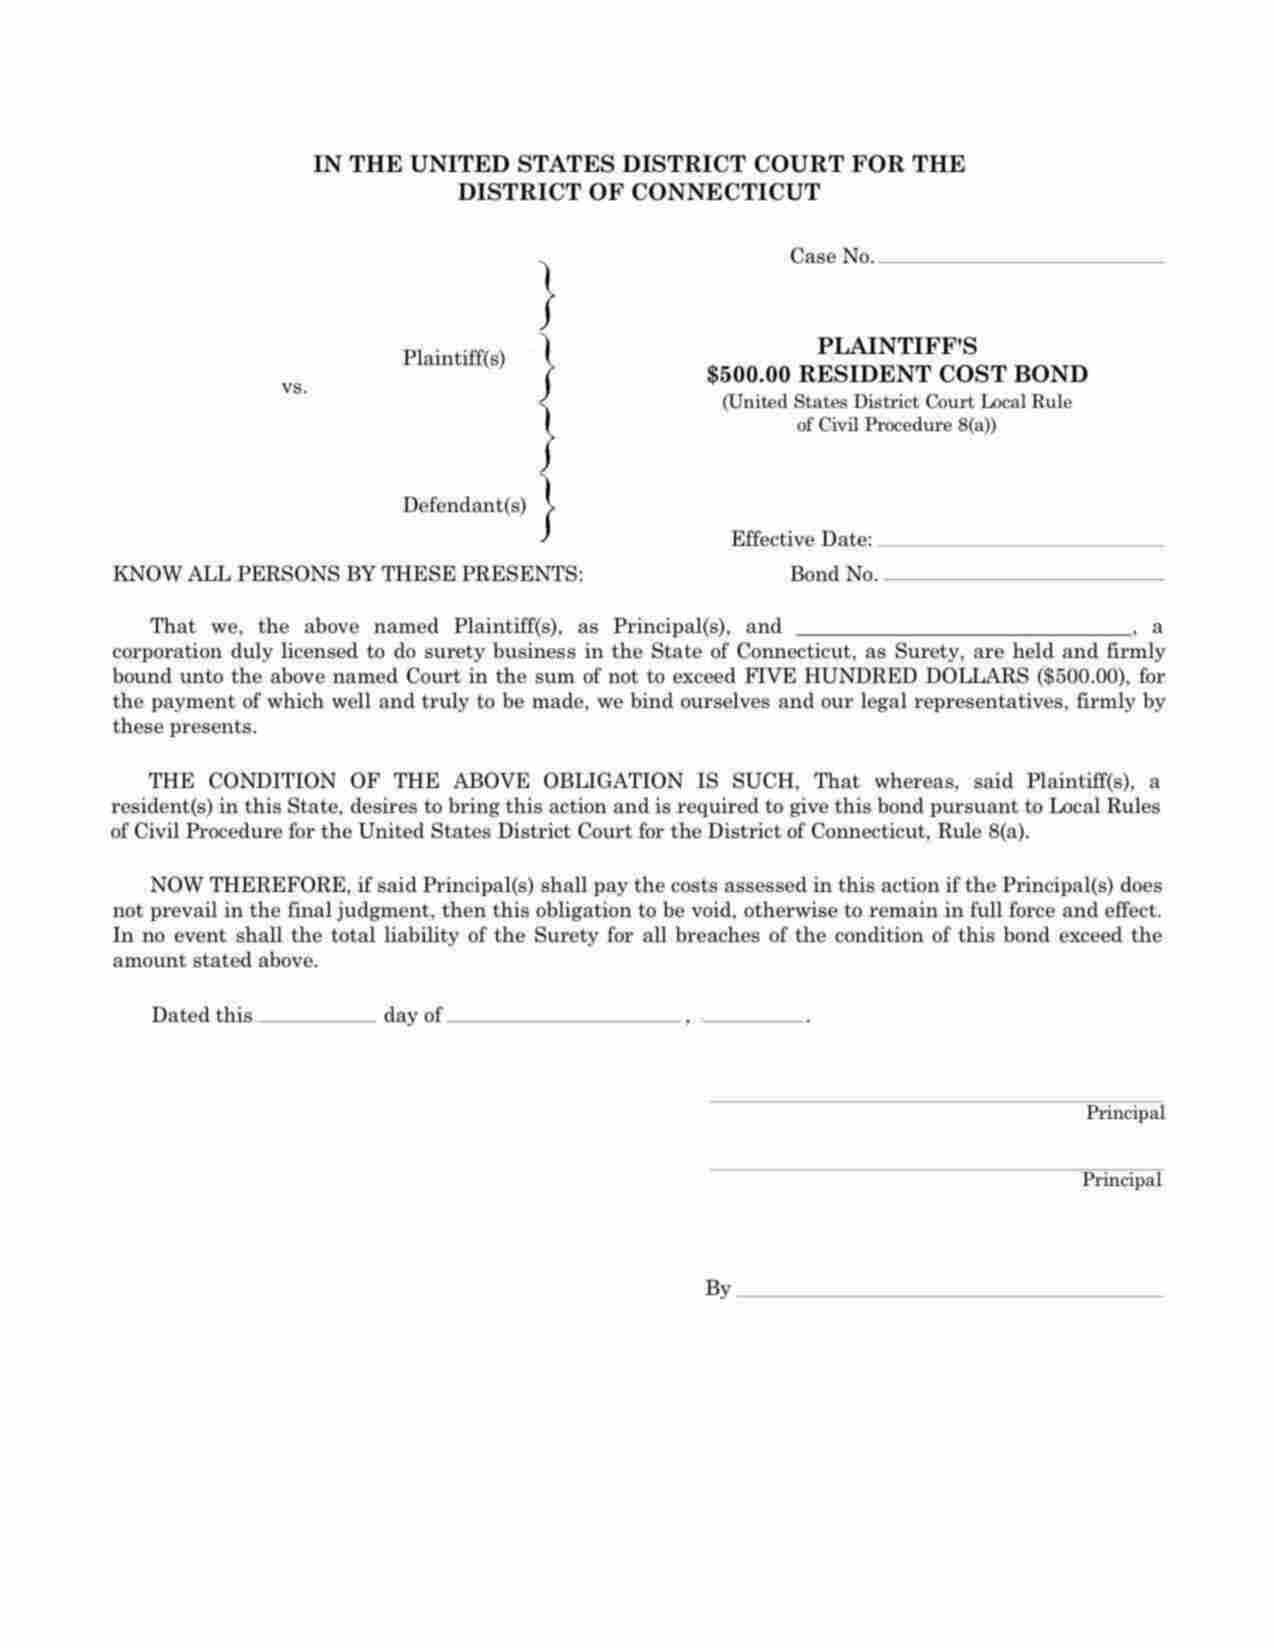 Connecticut Plaintiffs Resident Cost Bond Form